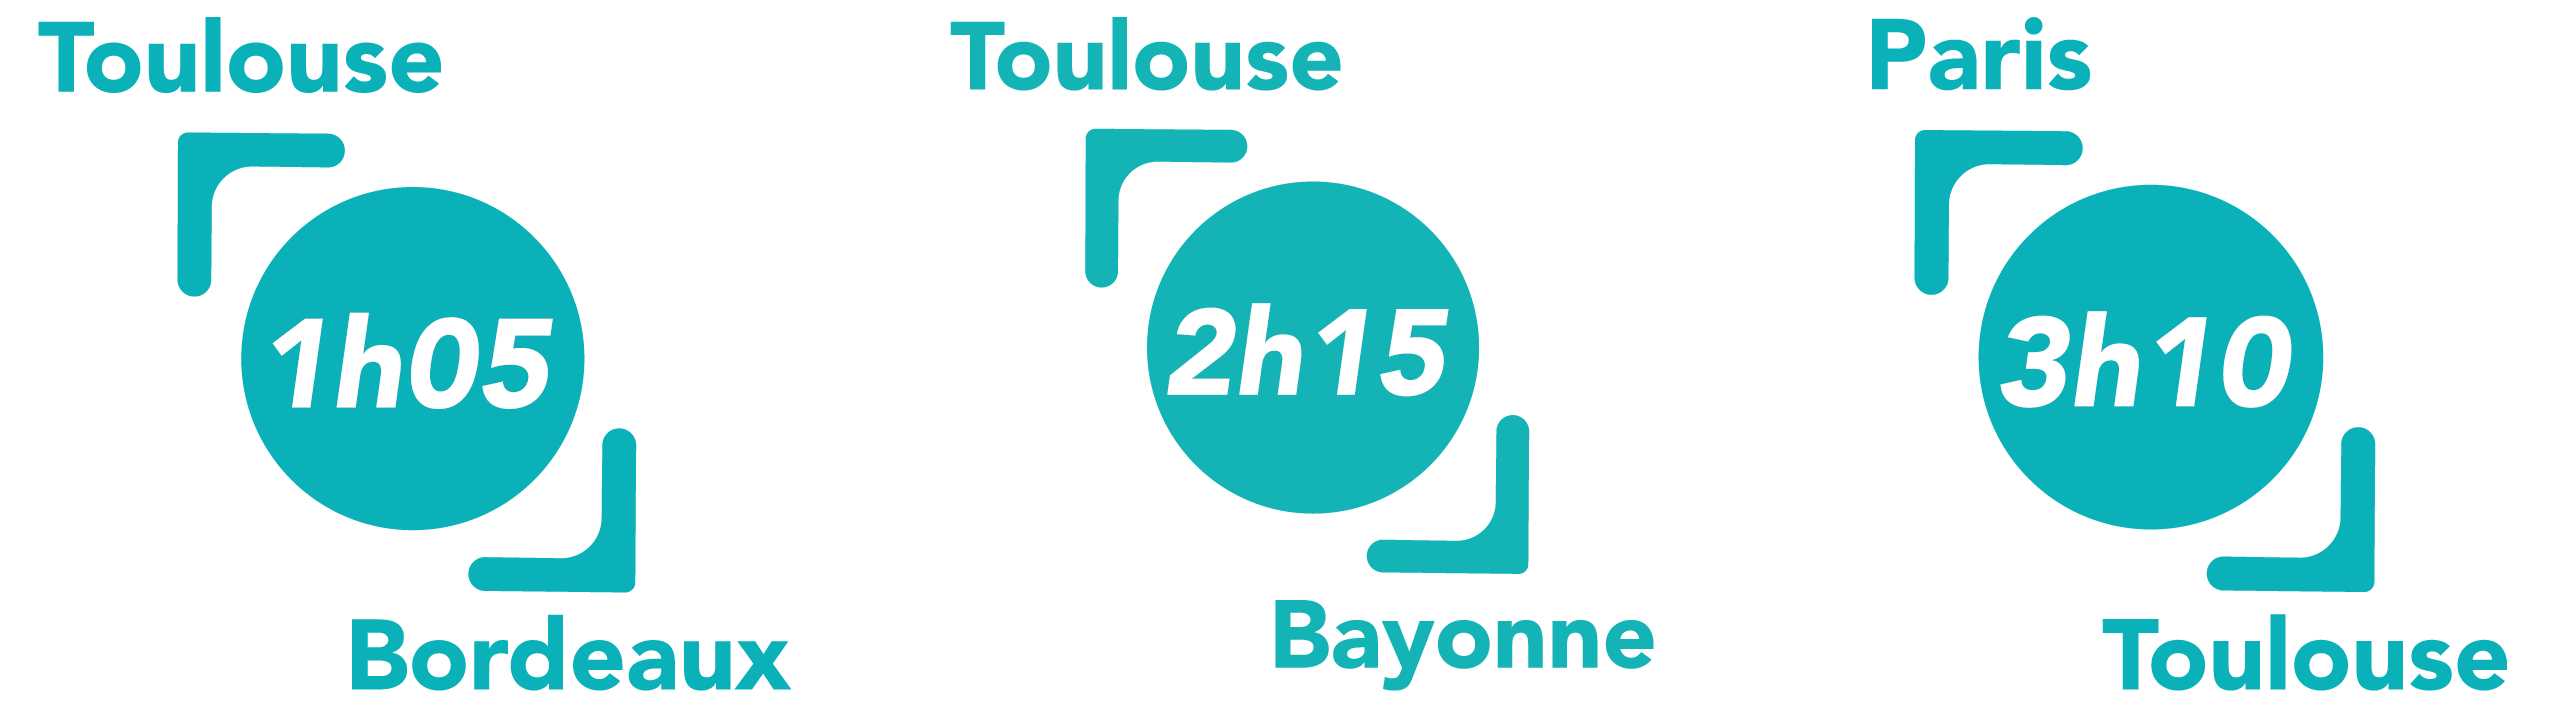 Nouveaux temps de trajets : 1h05 pour un Toulouse-Bordeaux, 2h15 pour un Toulouse-Bayonne, Paris-Toulouse pour un Paris-Toulouse